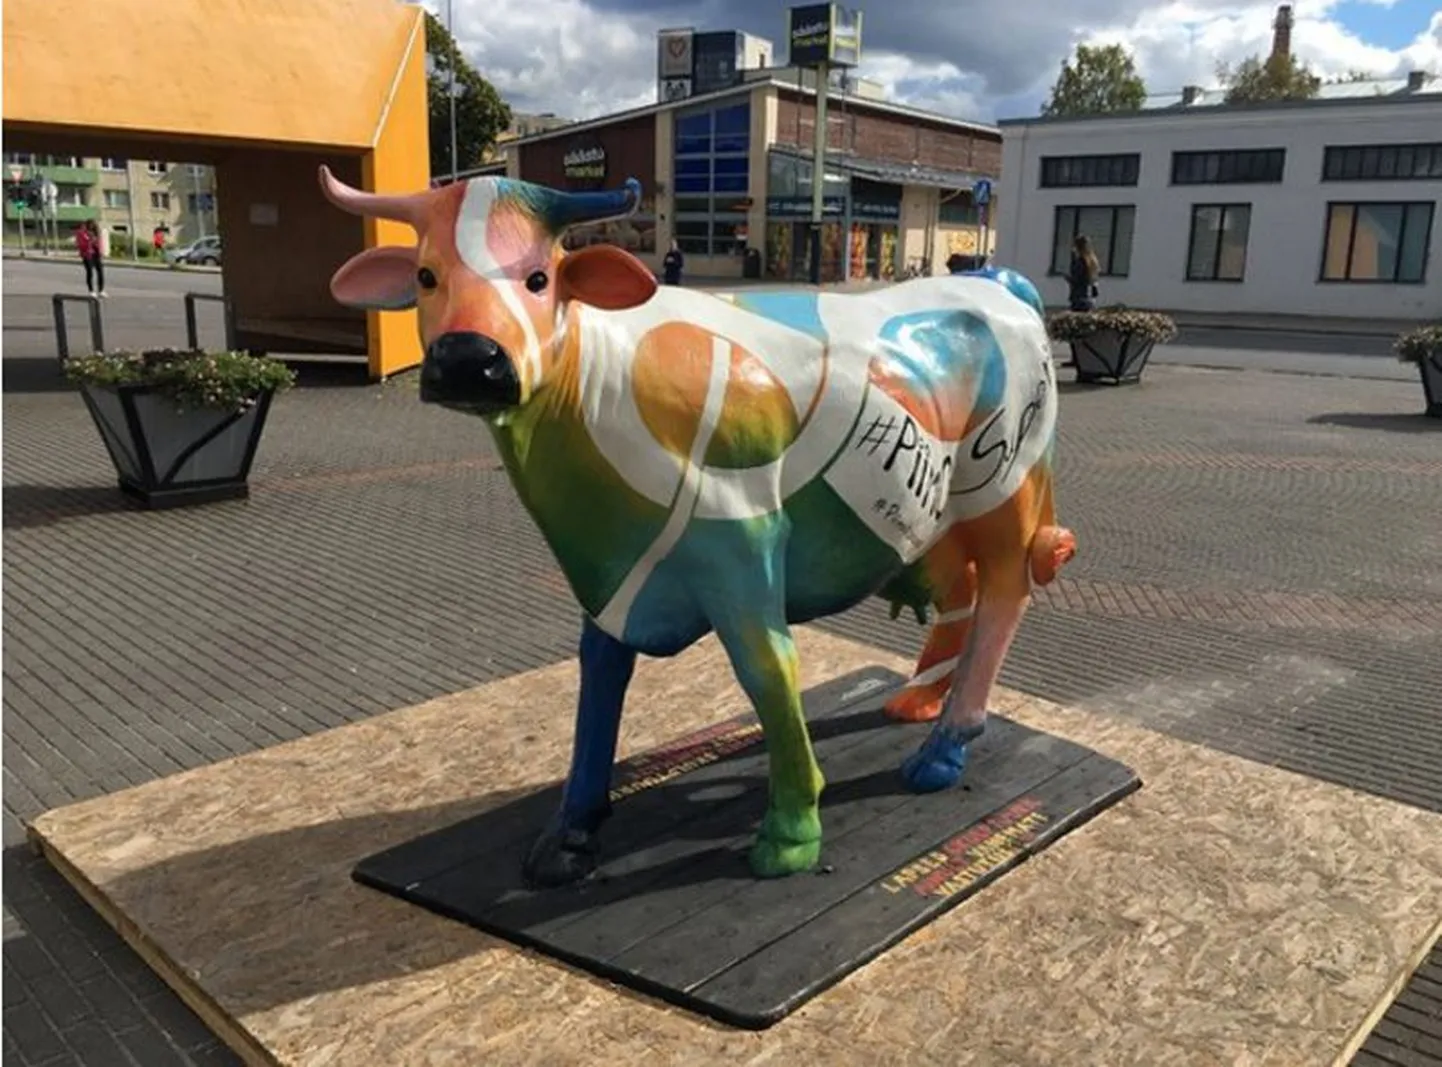 Toiduliidu mööda Eesti linnu rändav värvikirev piimalehma skulptuur jõudis Rakverre.